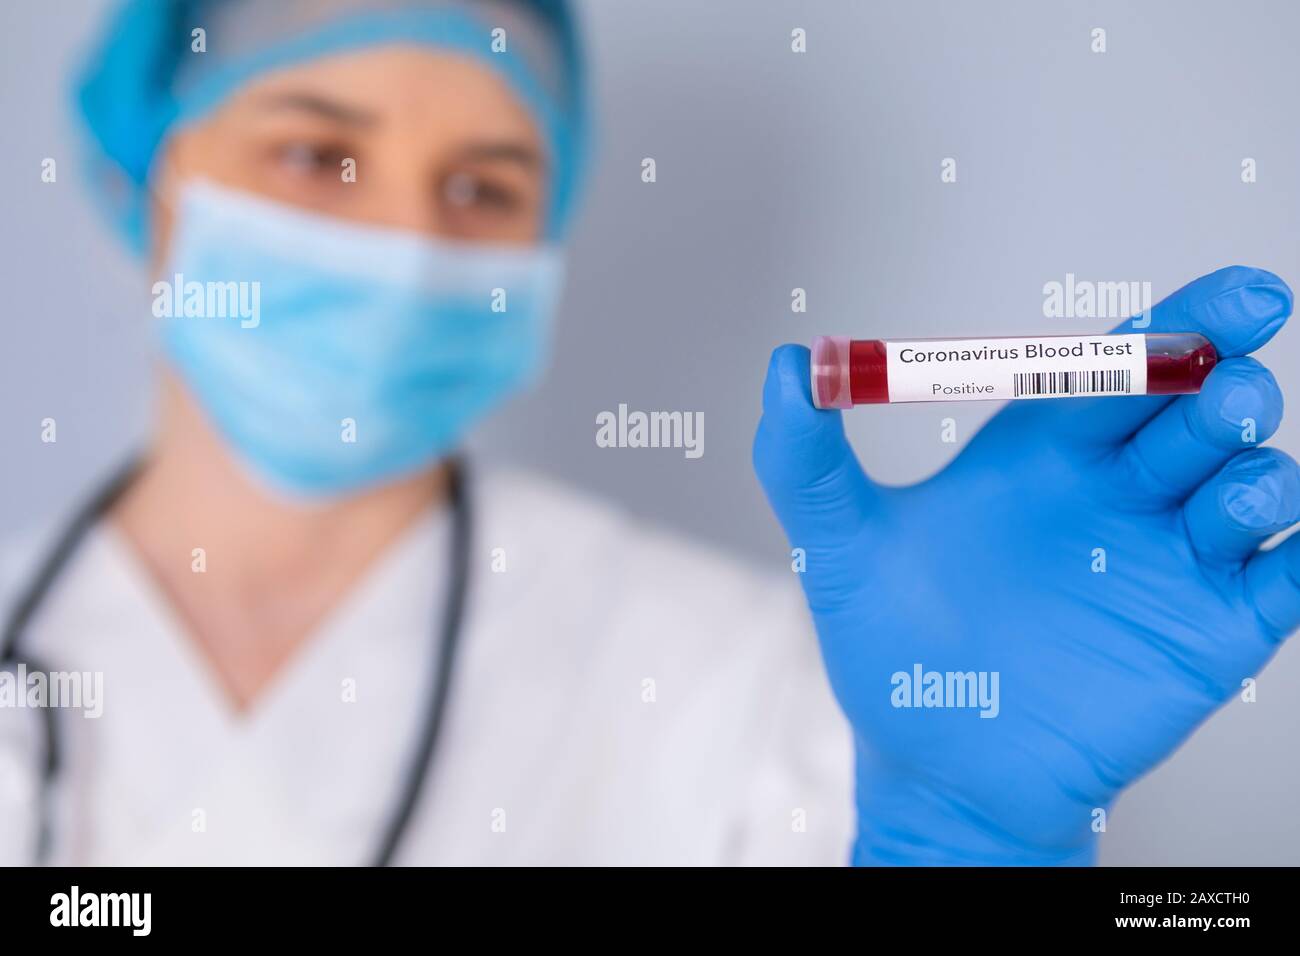 Tube de test de maintien infirmier avec échantillon Sanguin De test De coronavirus Positif. Test de virus et concept de recherche. L'accent est mis sur le tube de test sanguin. Banque D'Images